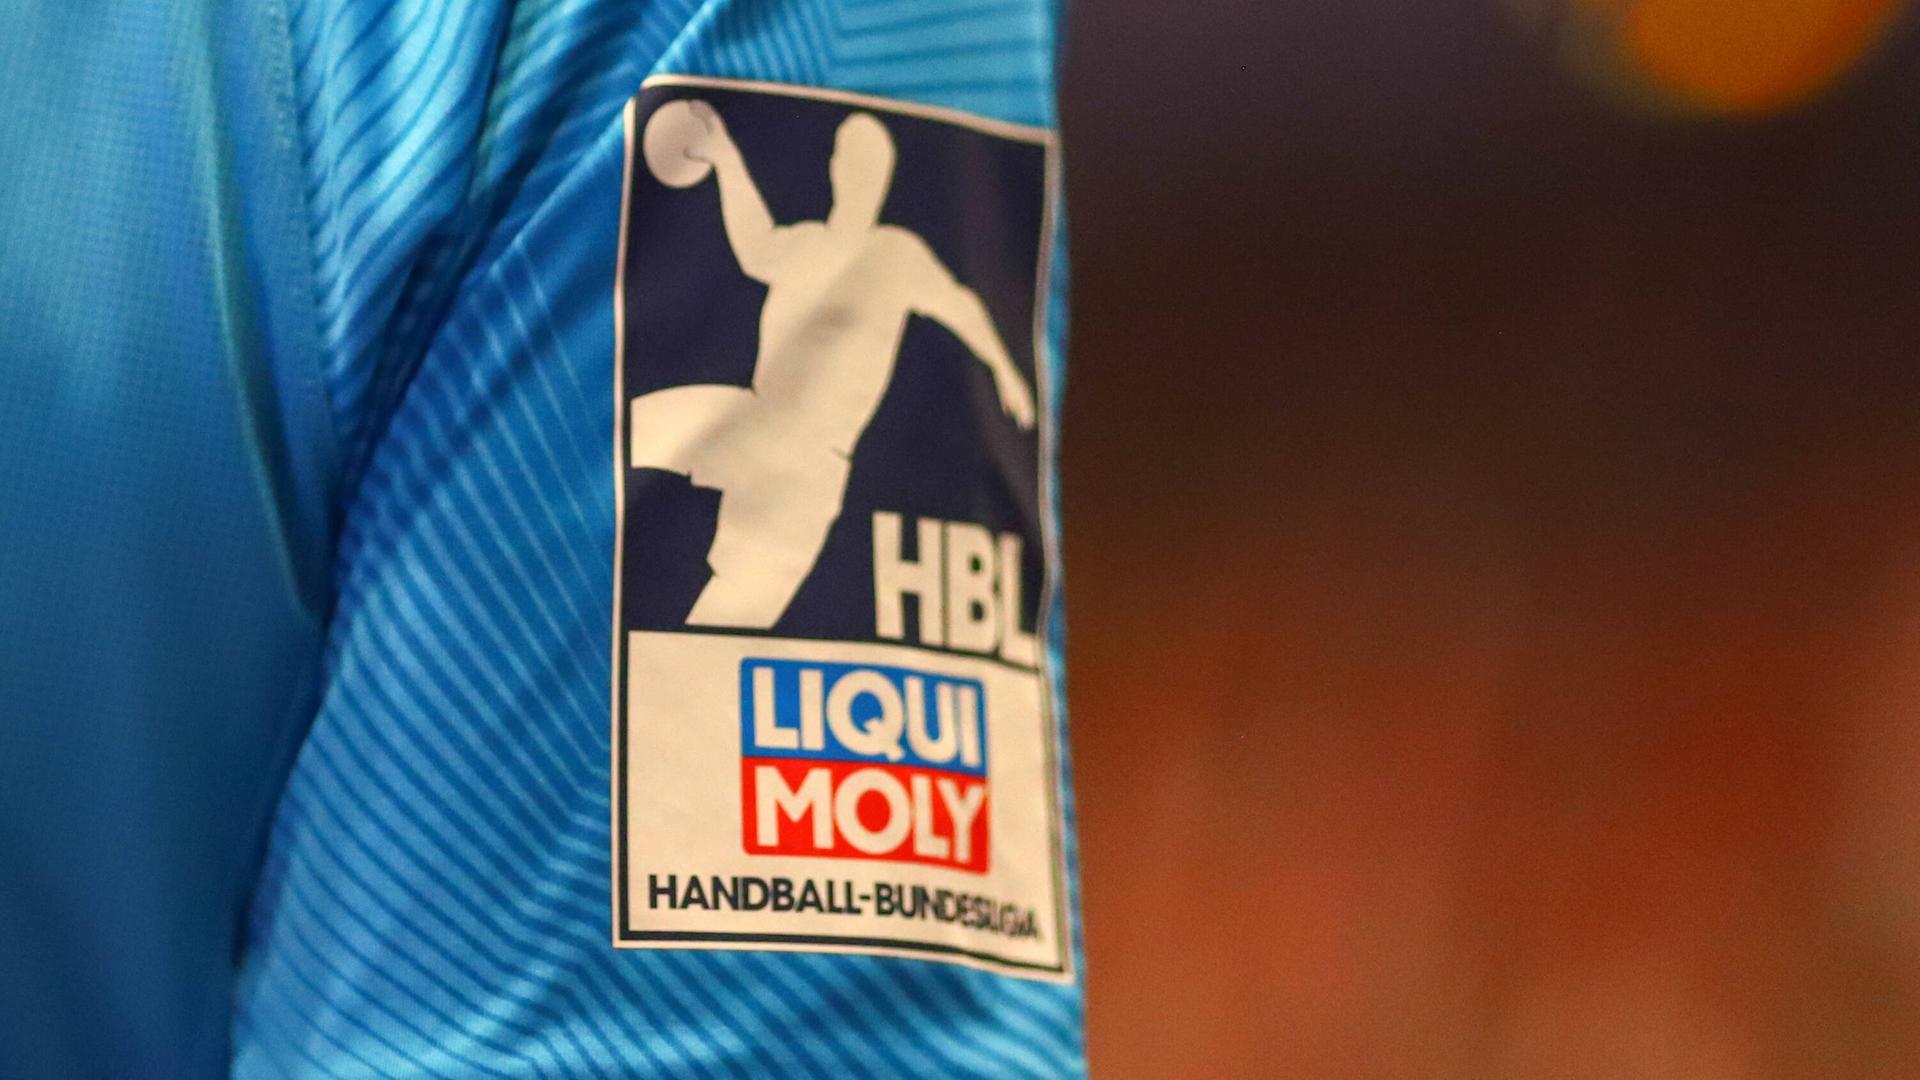 Das Logo der Handball-Bundesliga auf dem Ärmel eines Schiedsrichters.